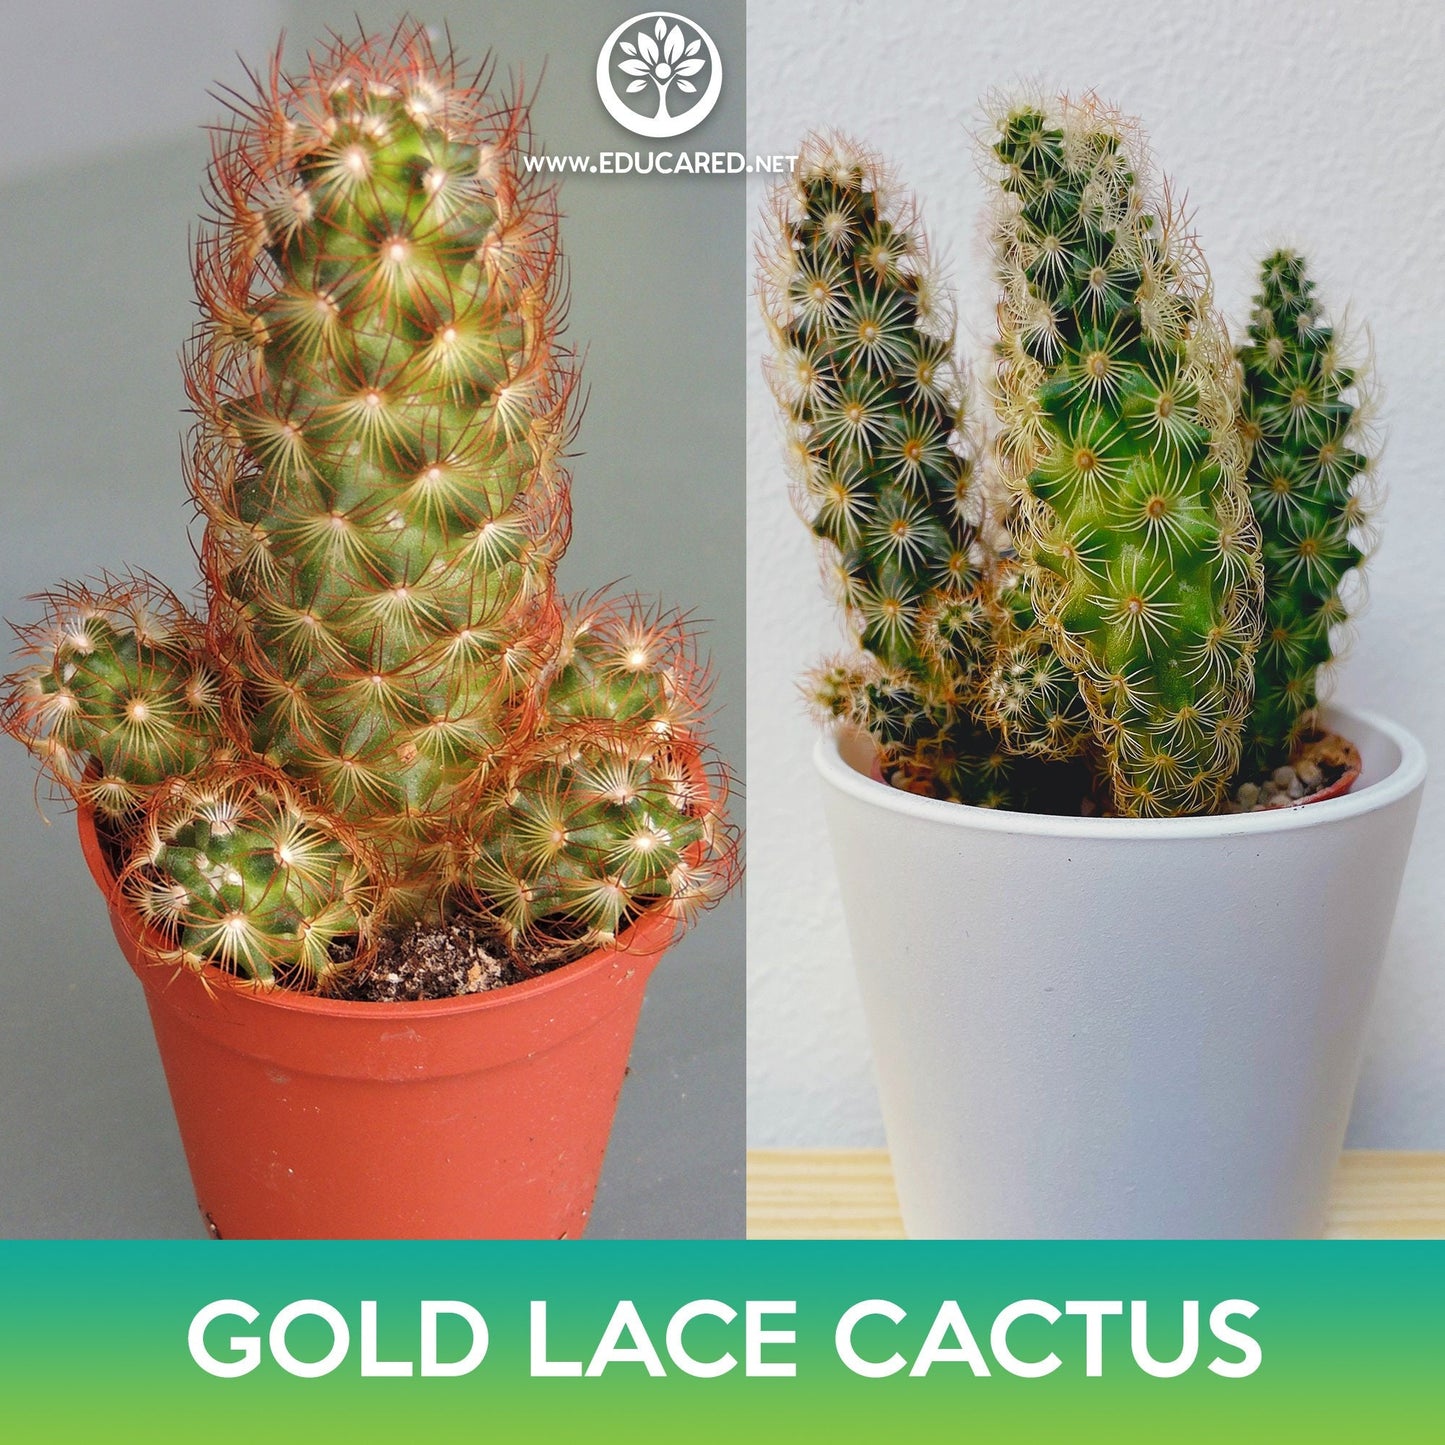 Gold Lace Cactus Seeds, Ladyfinger Cactus, Mammillaria elongata